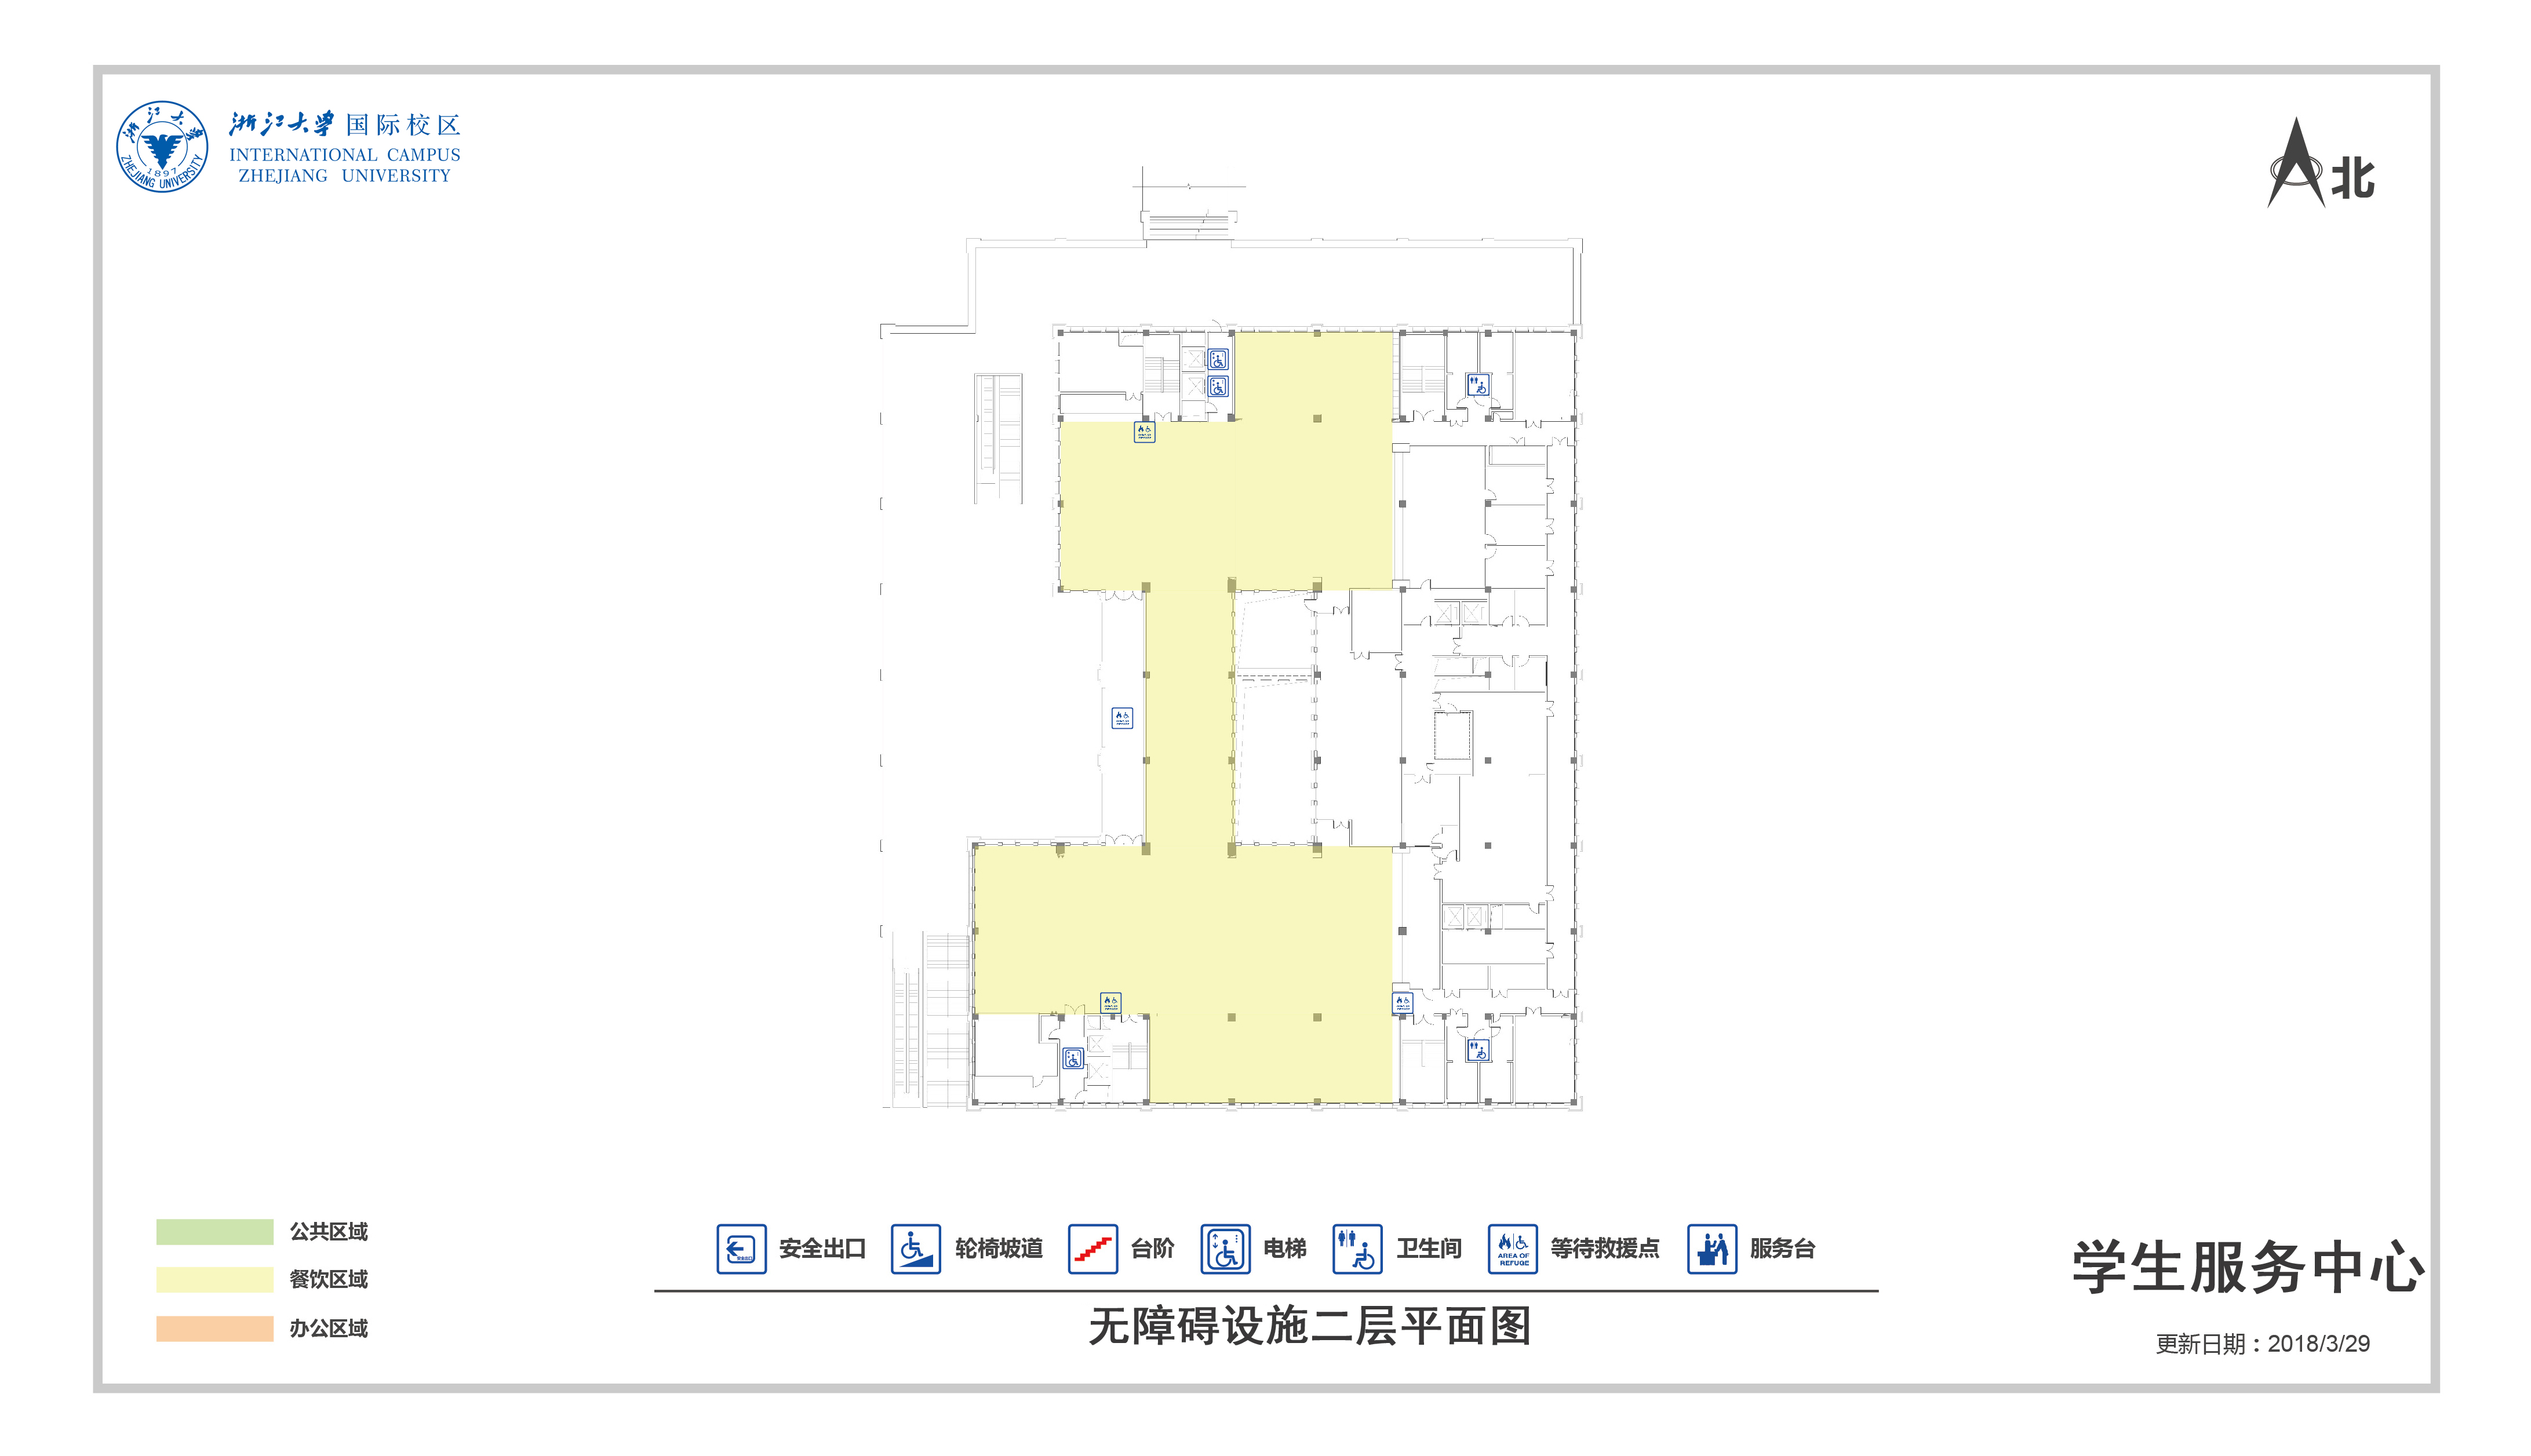 学生服务中心无障碍设施二层平面图.jpg